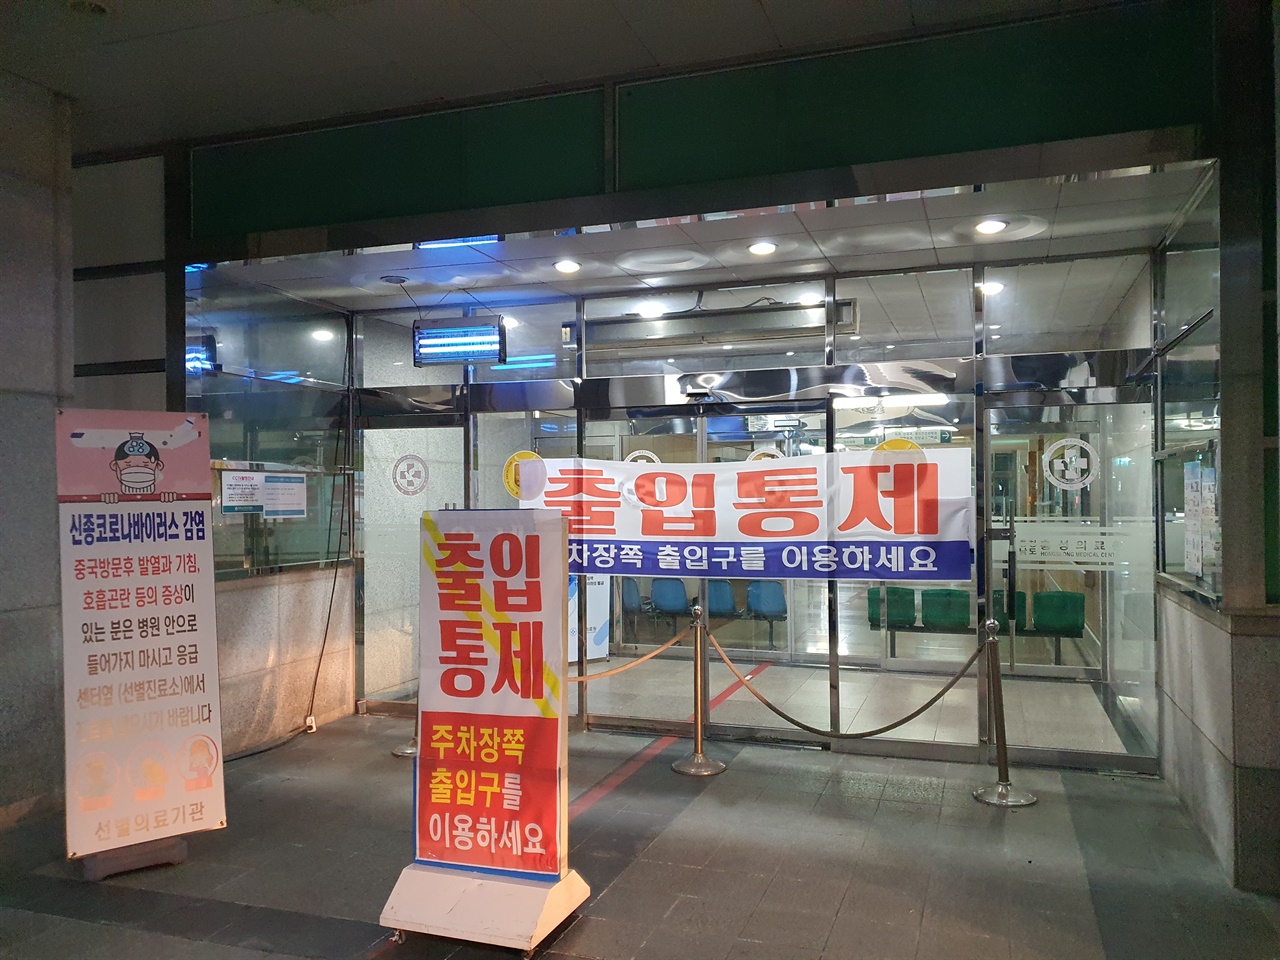 이날 오후 7시경 기자가 찾은 홍성의료원 현관 출입구는 '출입통제'라는 펼침막이 내걸려 있었다.